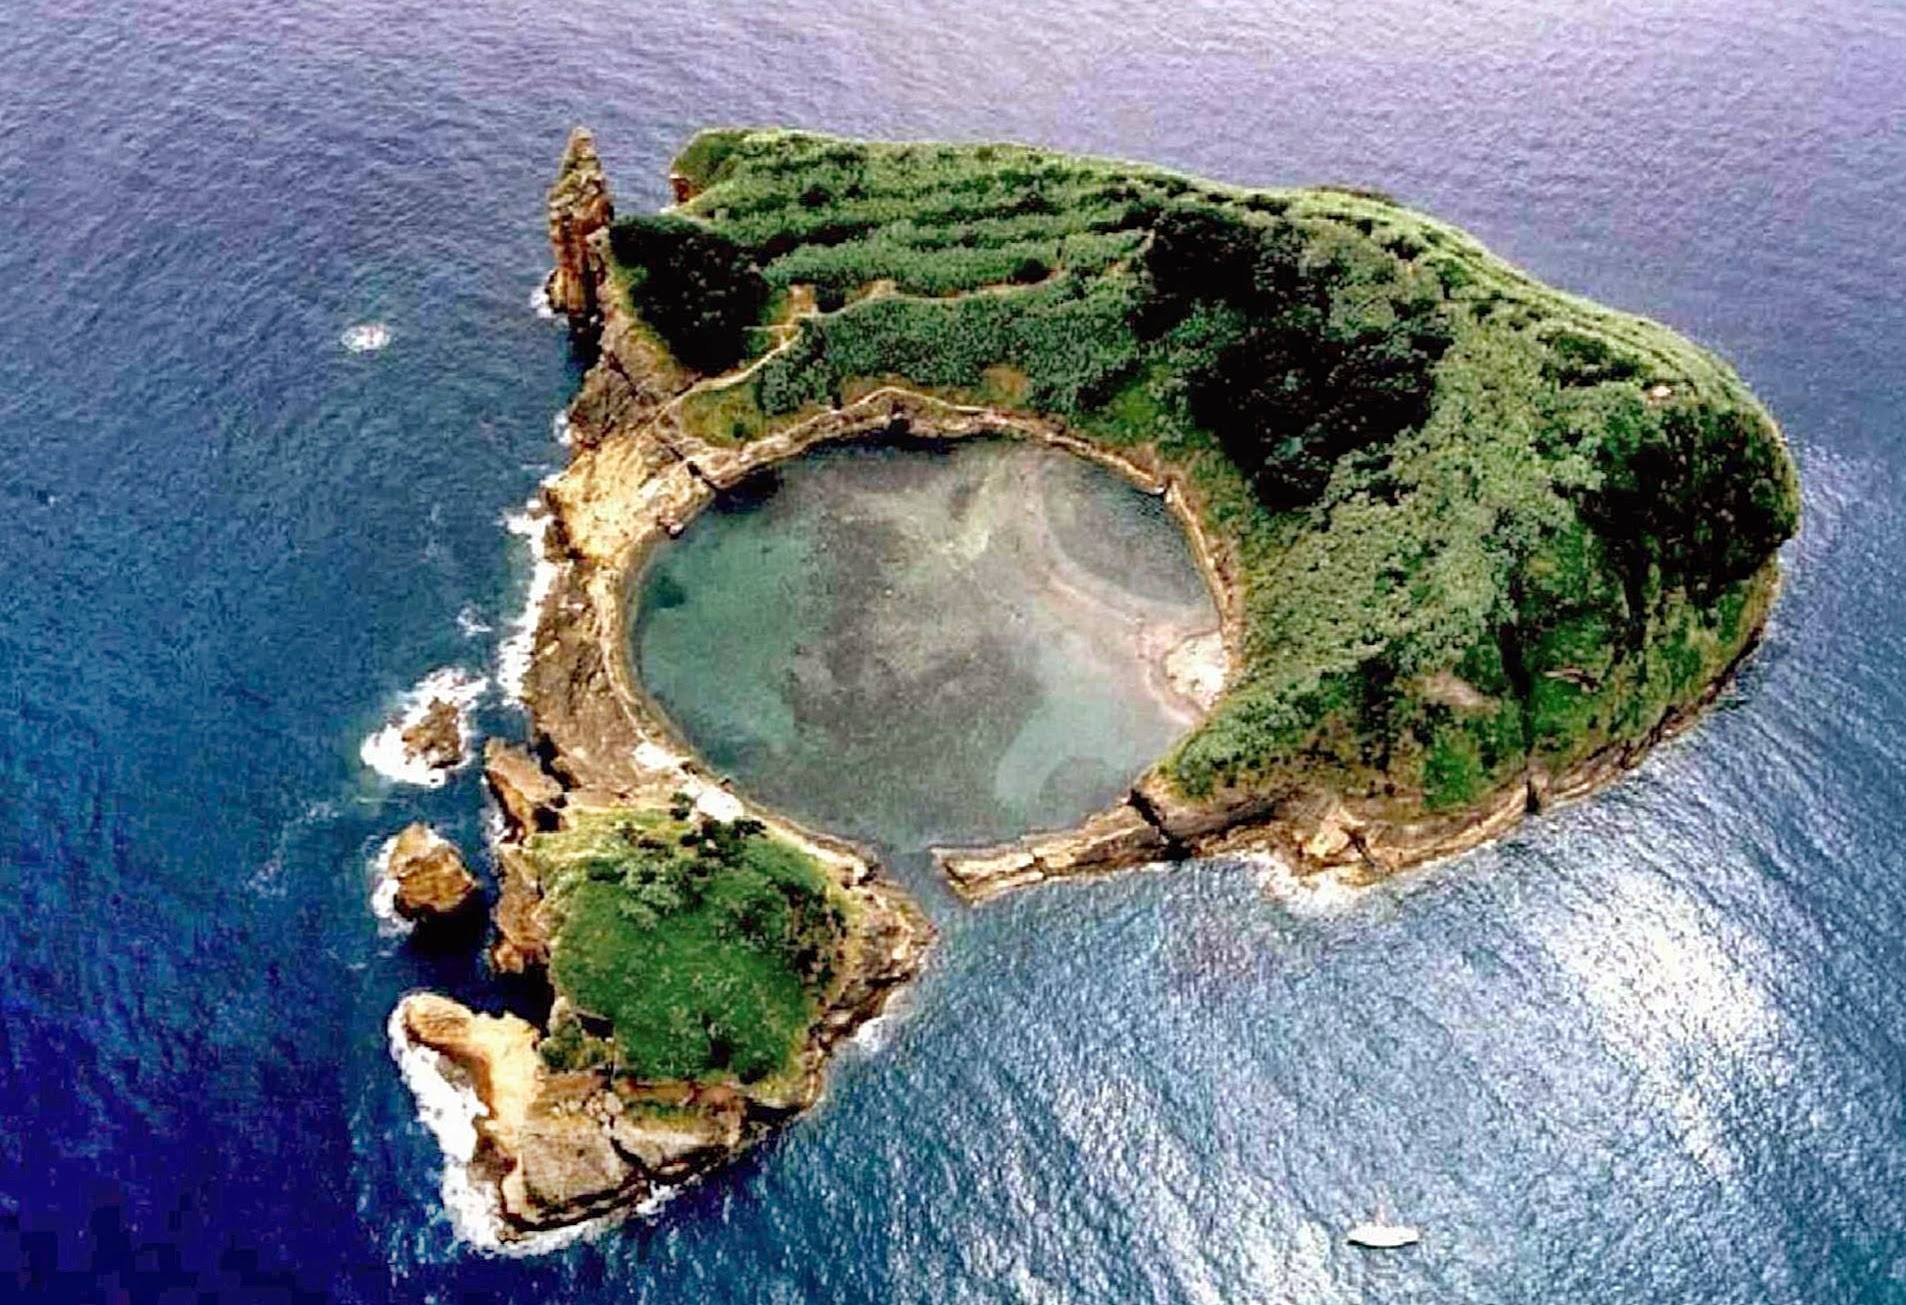 conformidad físico marxista Los 15 mejores sitios que ver y visitar en las islas Azores | VortexMag